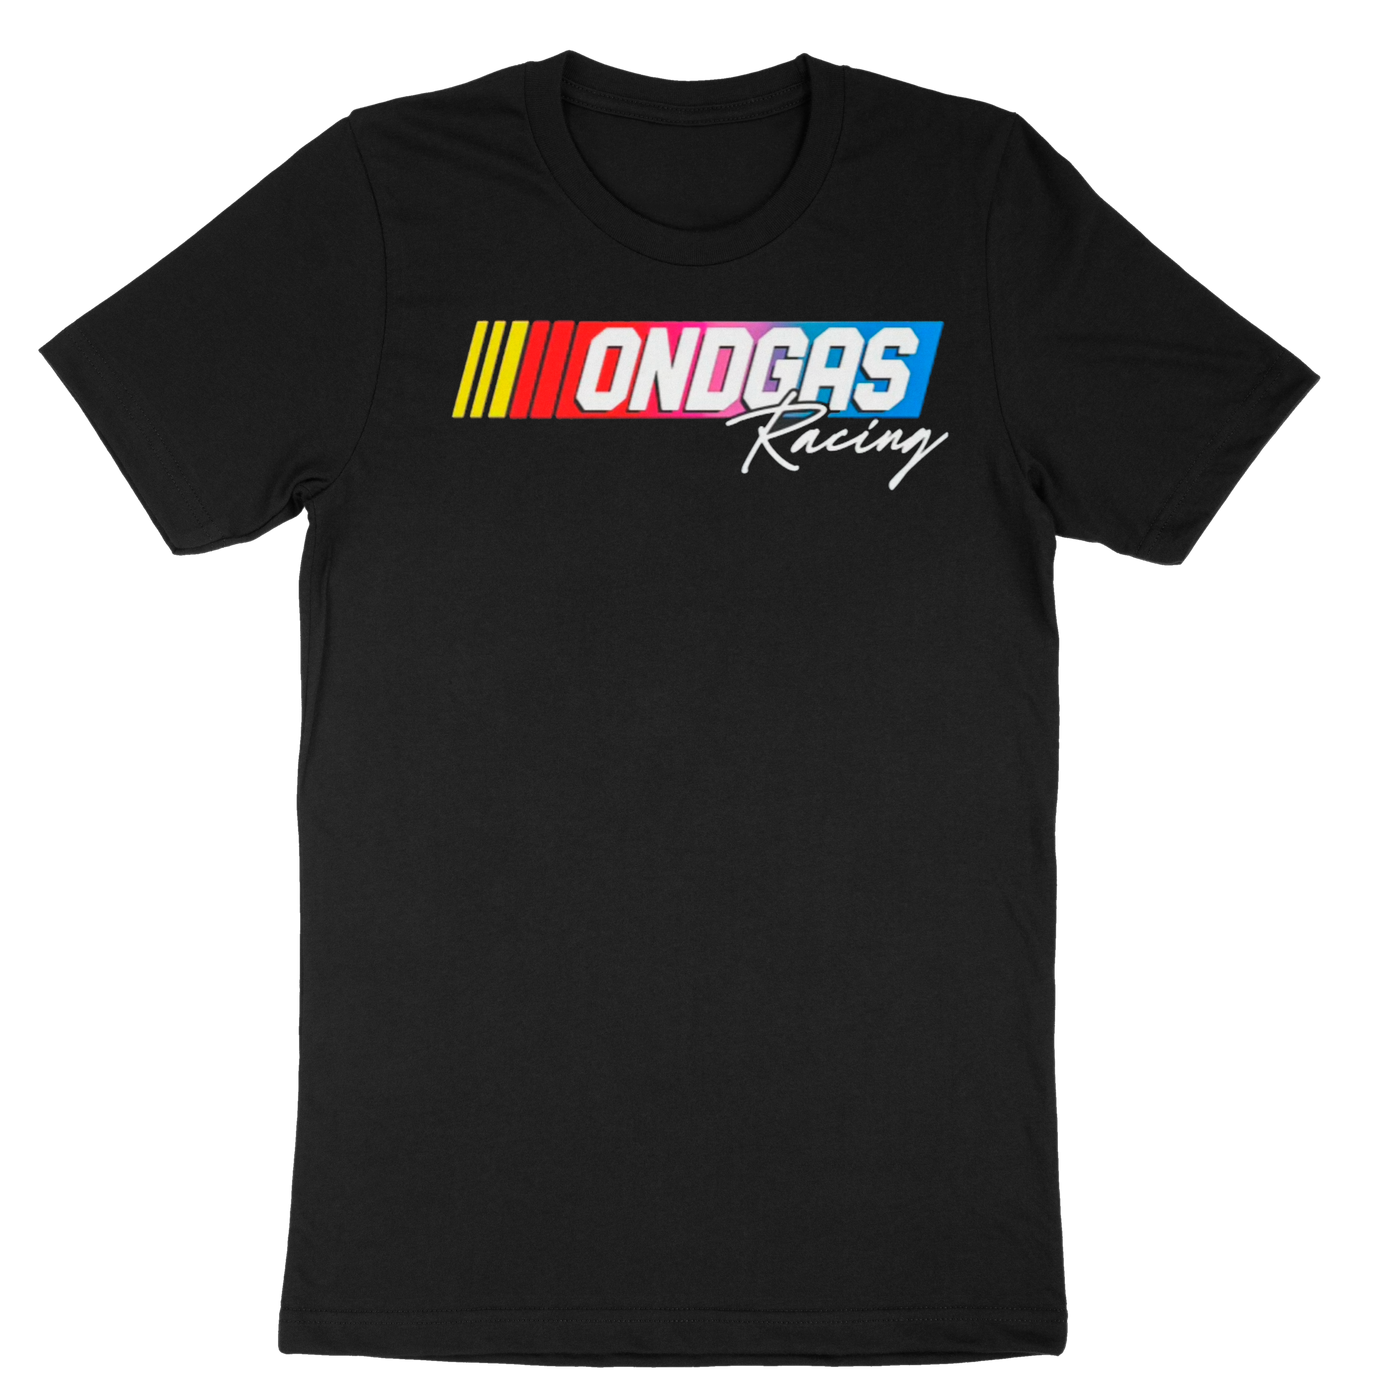 NASCAR ONDGAS Racing shirt